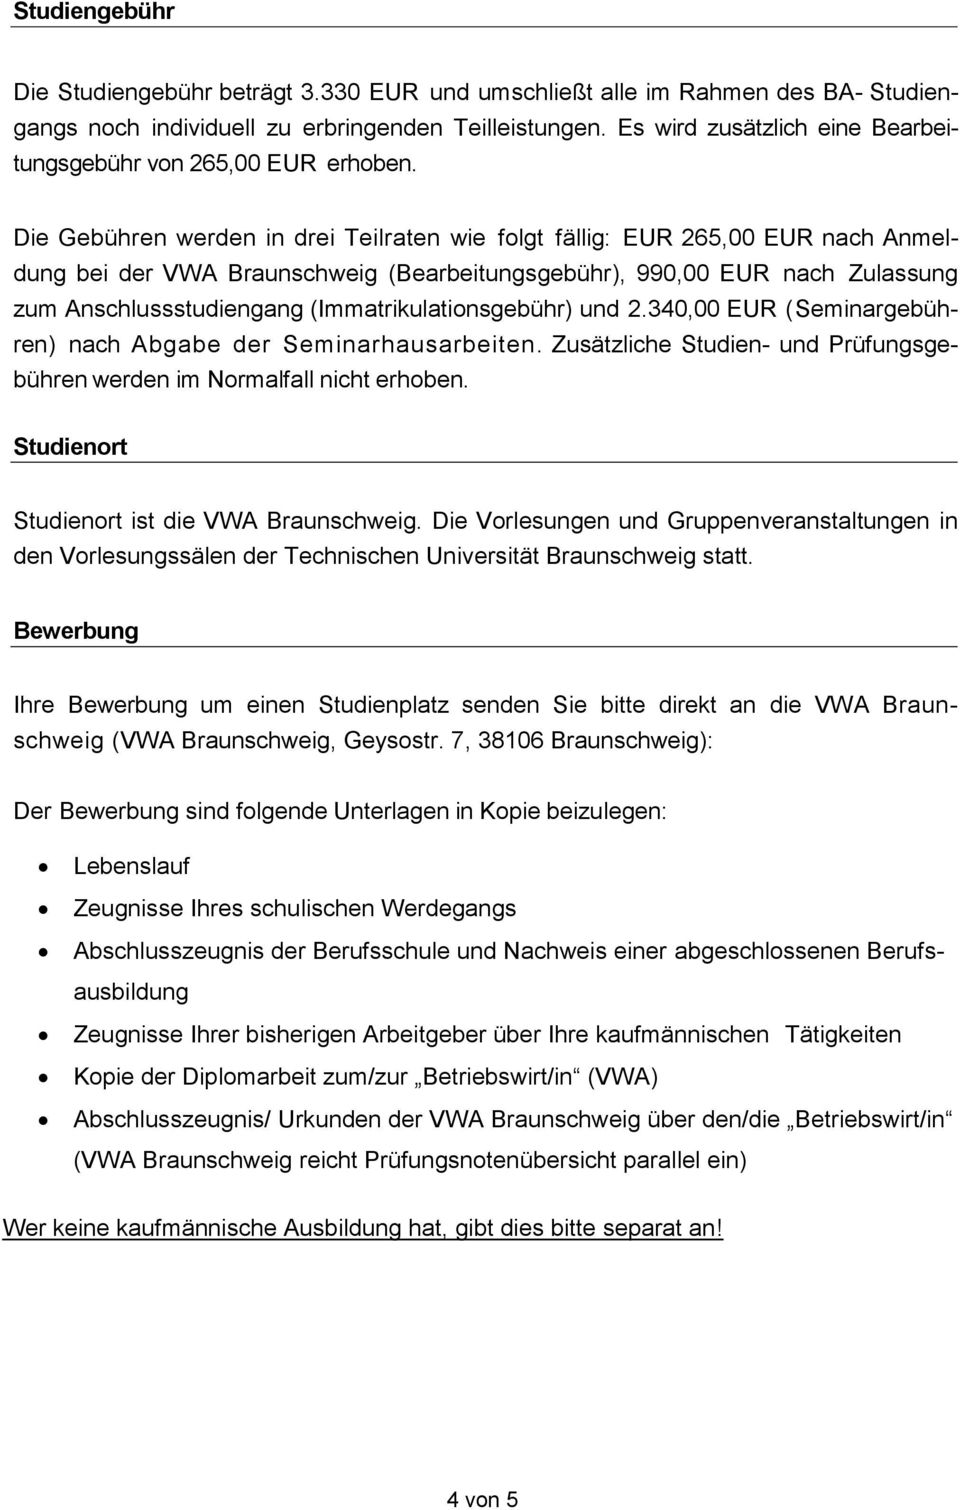 Die Gebühren werden in drei Teilraten wie folgt fällig: EUR 265,00 EUR nach Anmeldung bei der VWA Braunschweig (Bearbeitungsgebühr), 990,00 EUR nach Zulassung zum Anschlussstudiengang